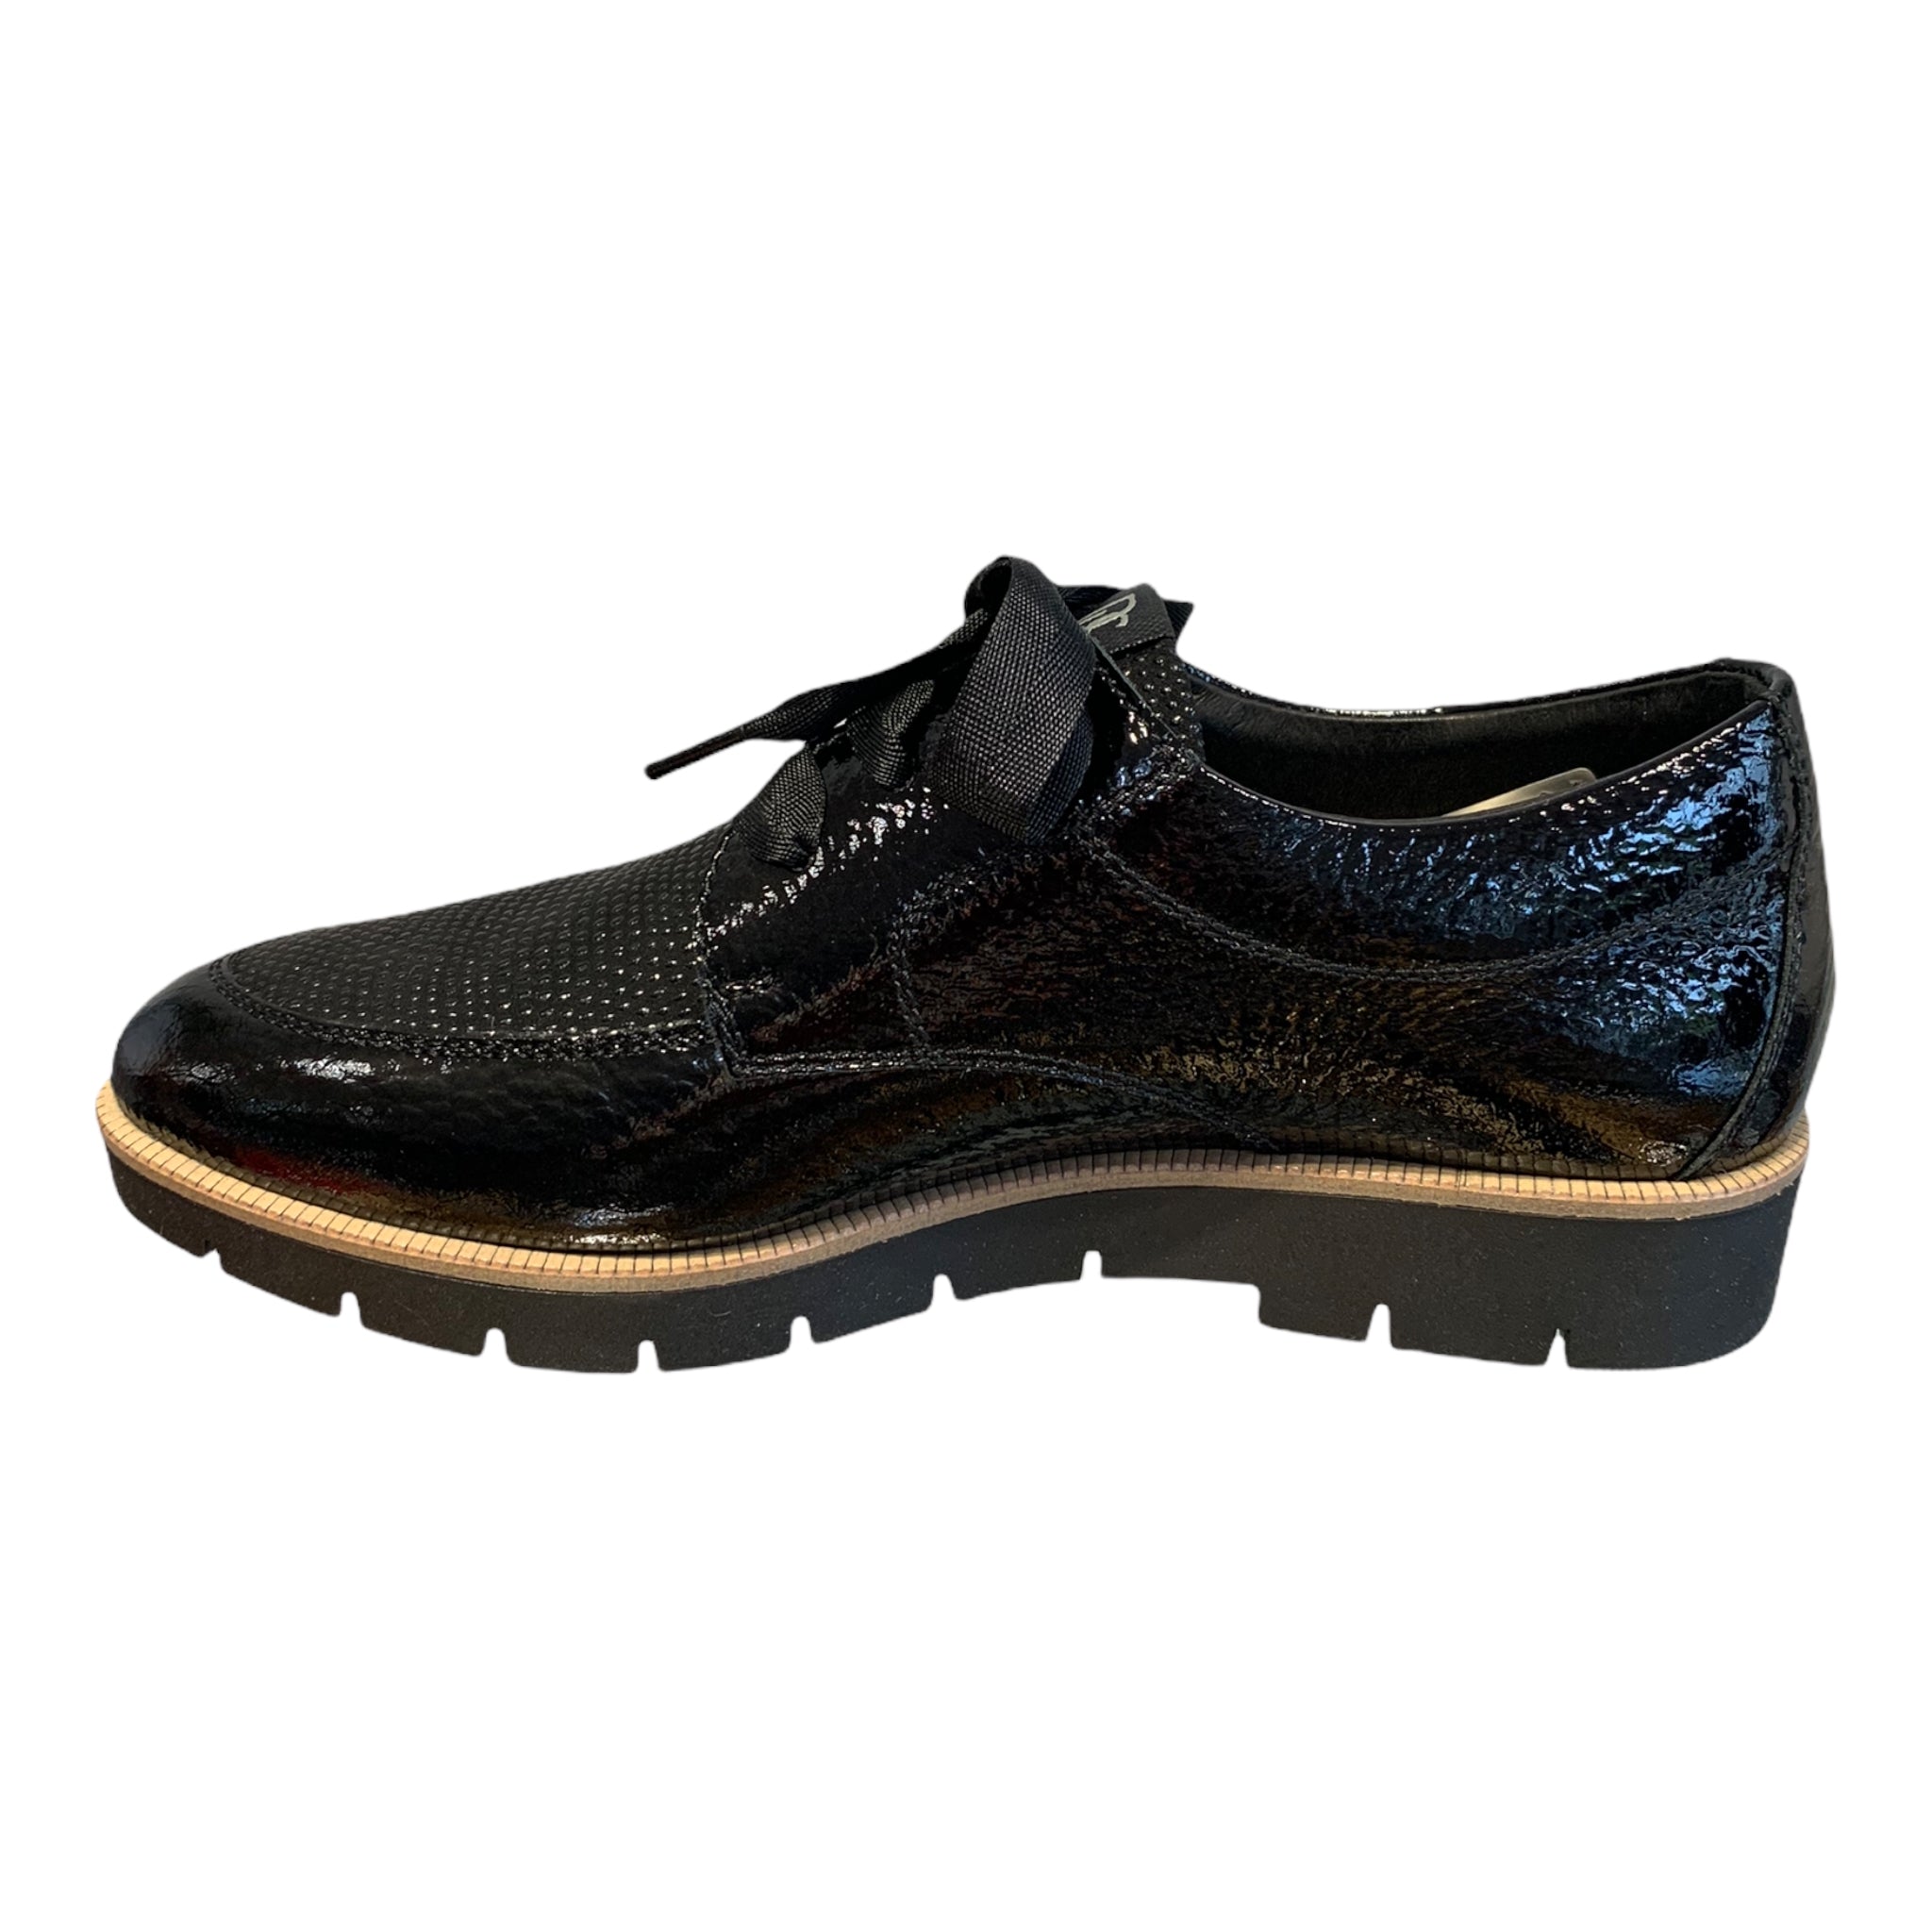 DL Sport Lacing Shoe Black Patent - Size 7.5